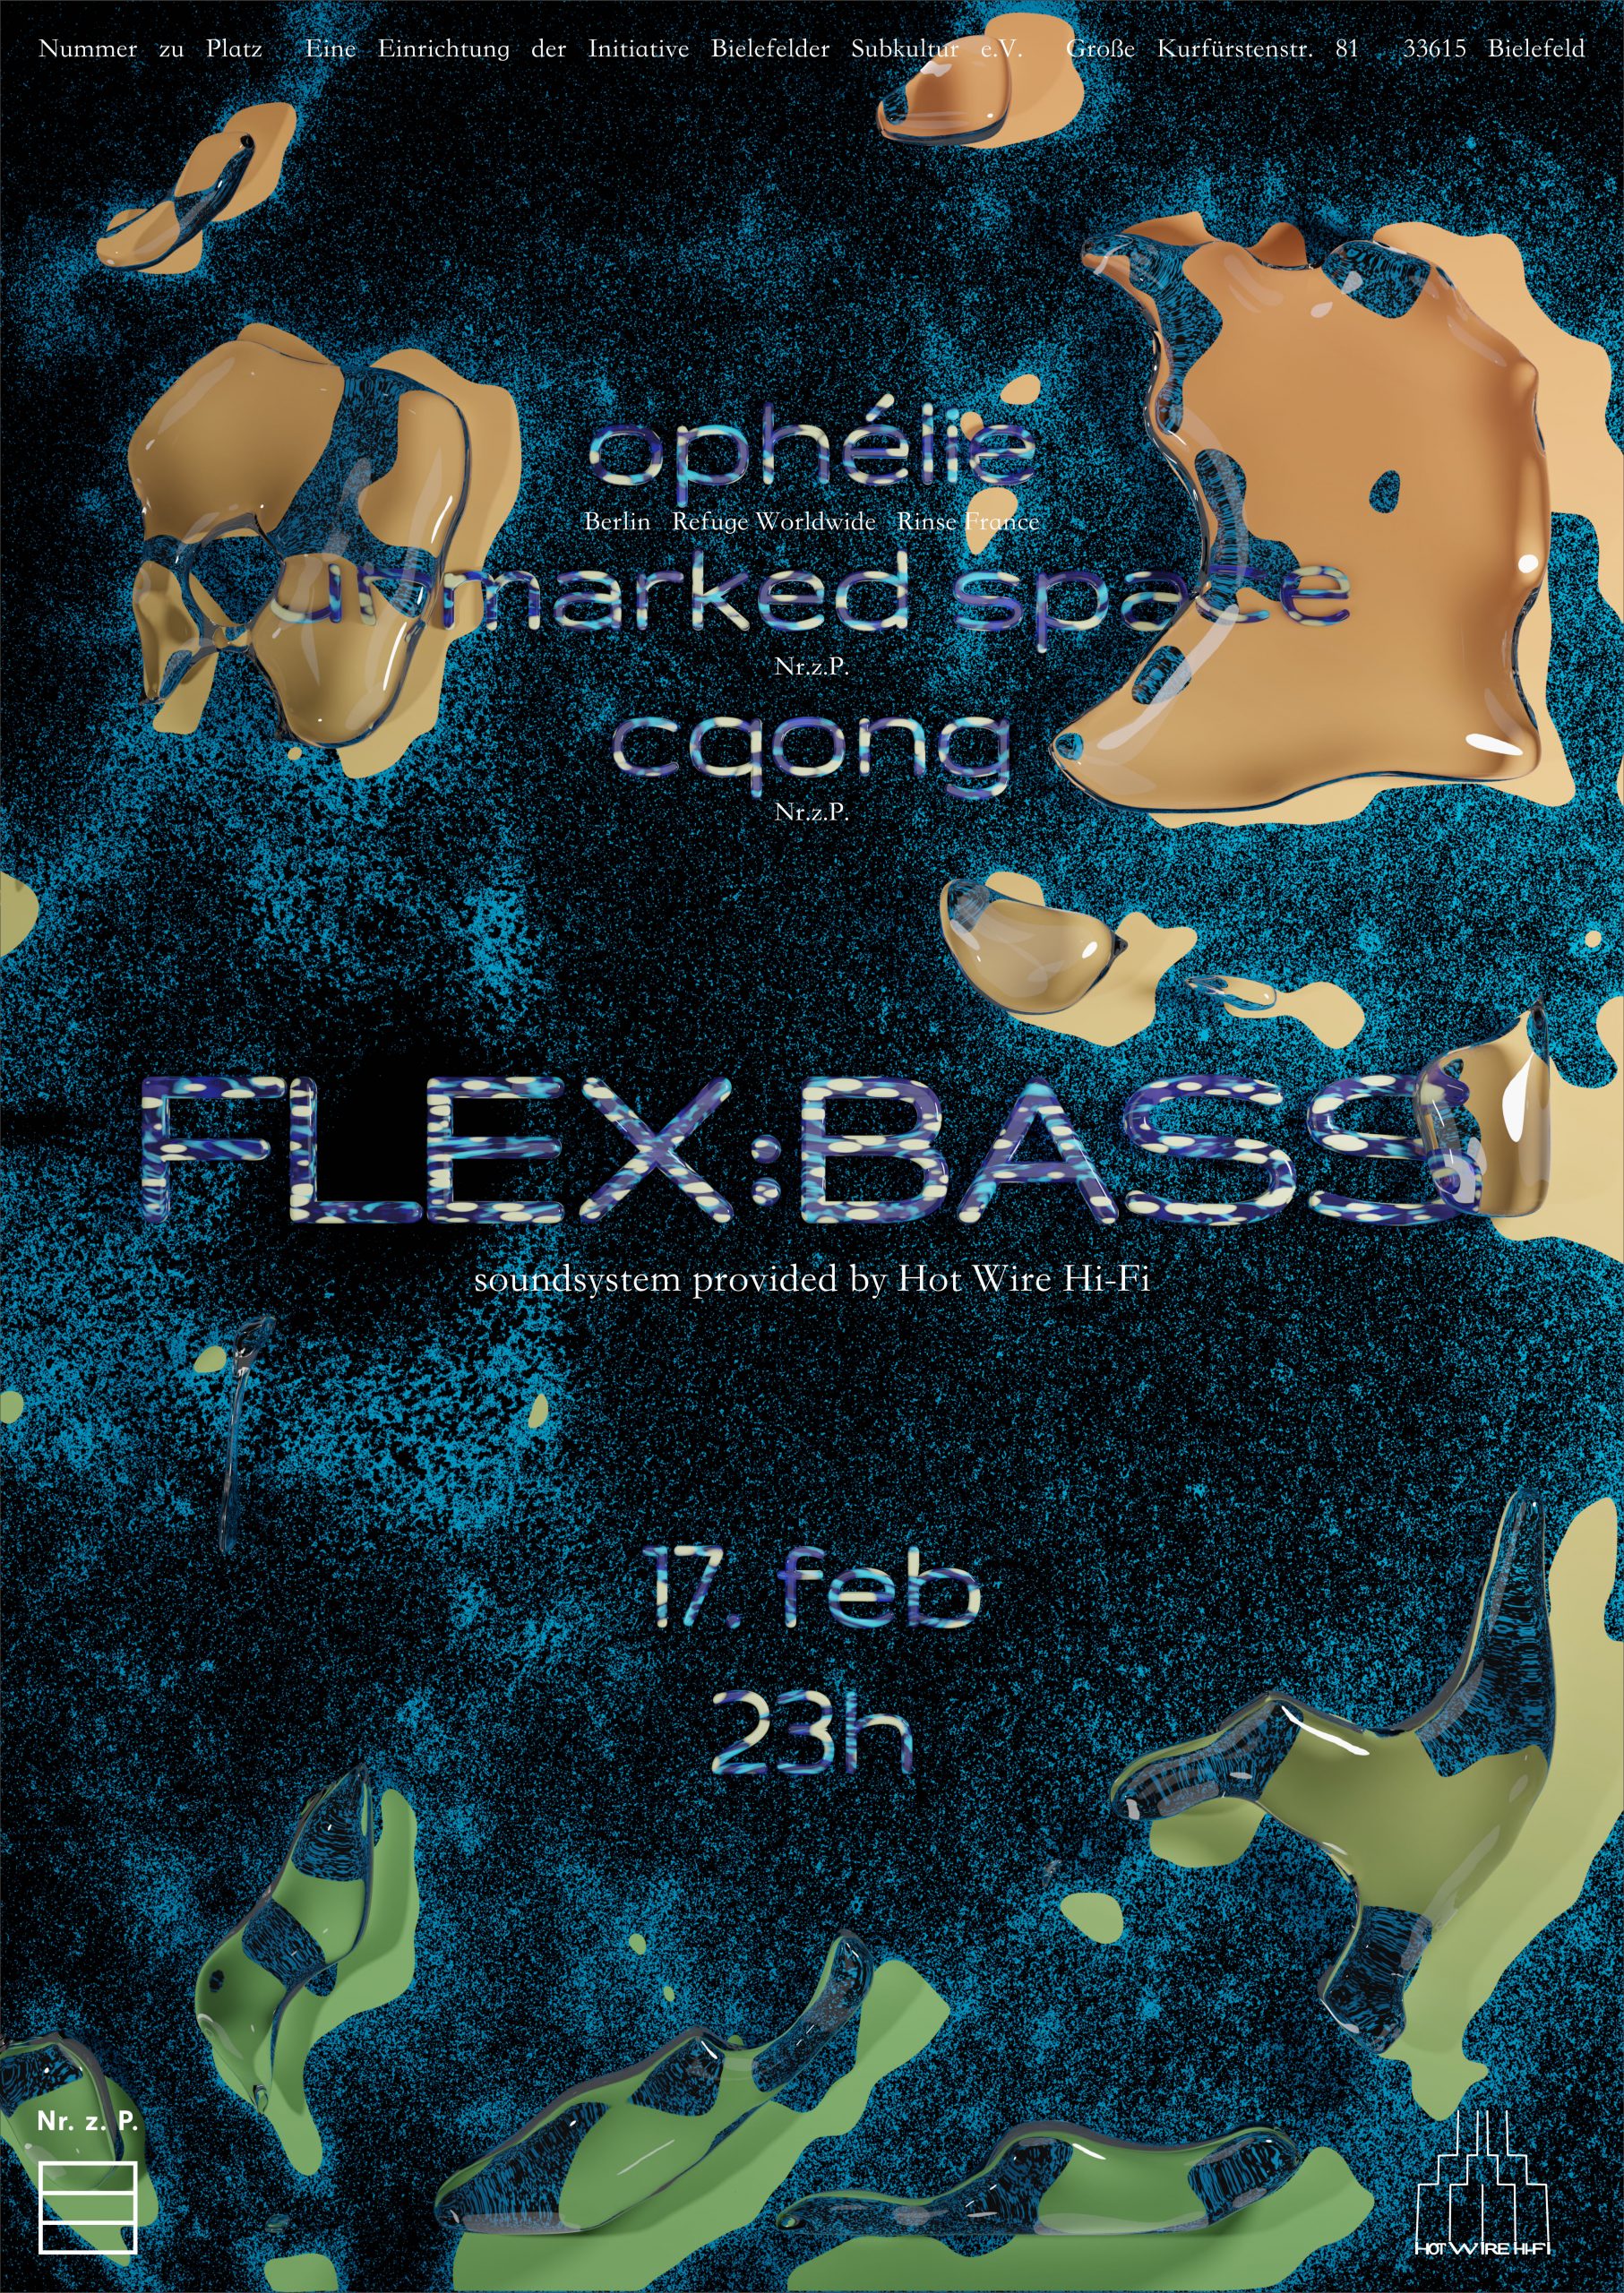 Flex:Bass